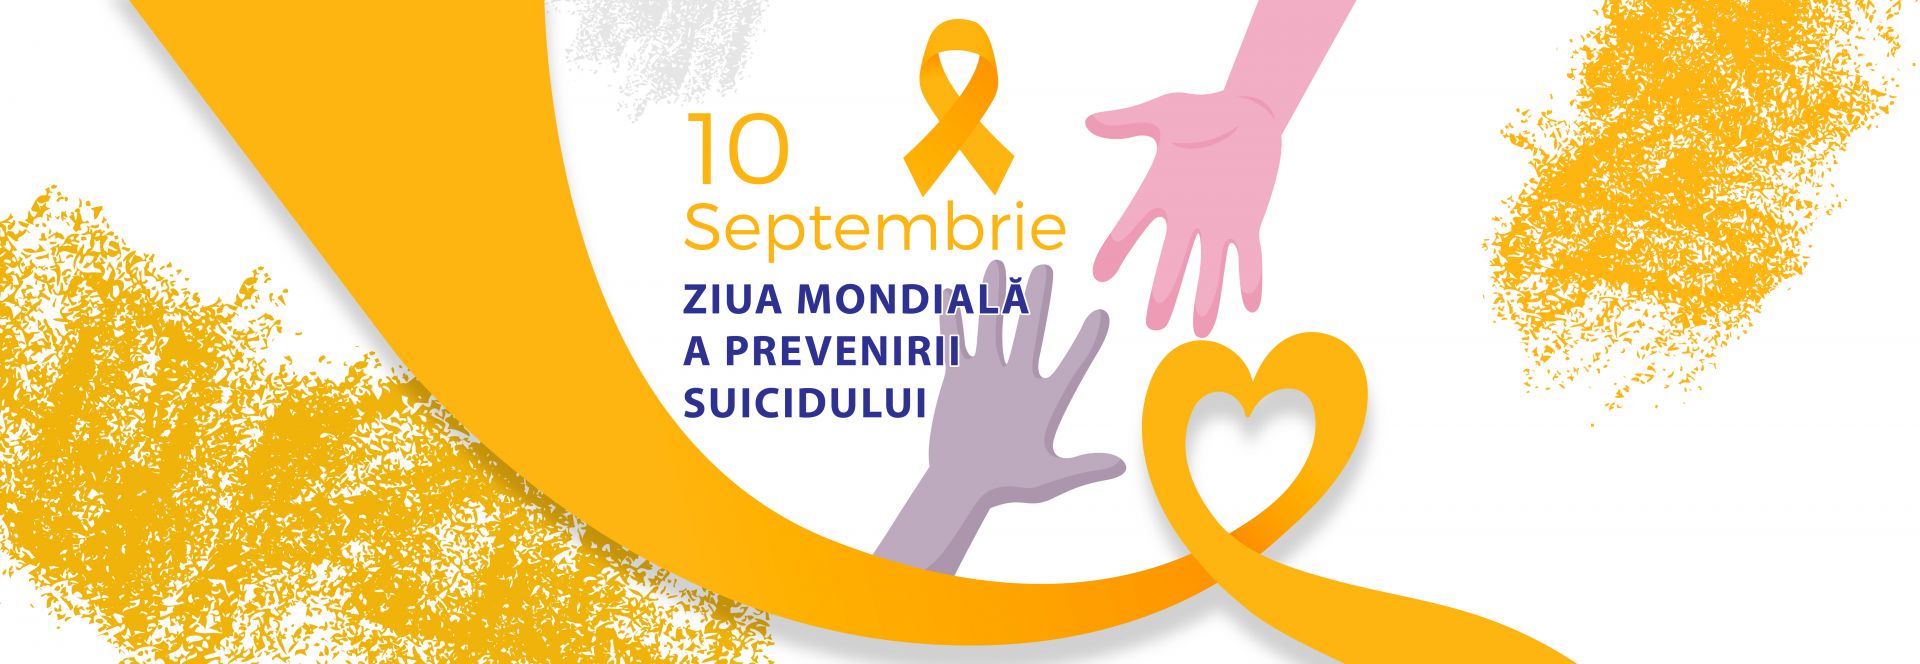 Ziua Mondială pentru Prevenirea Suicidului 